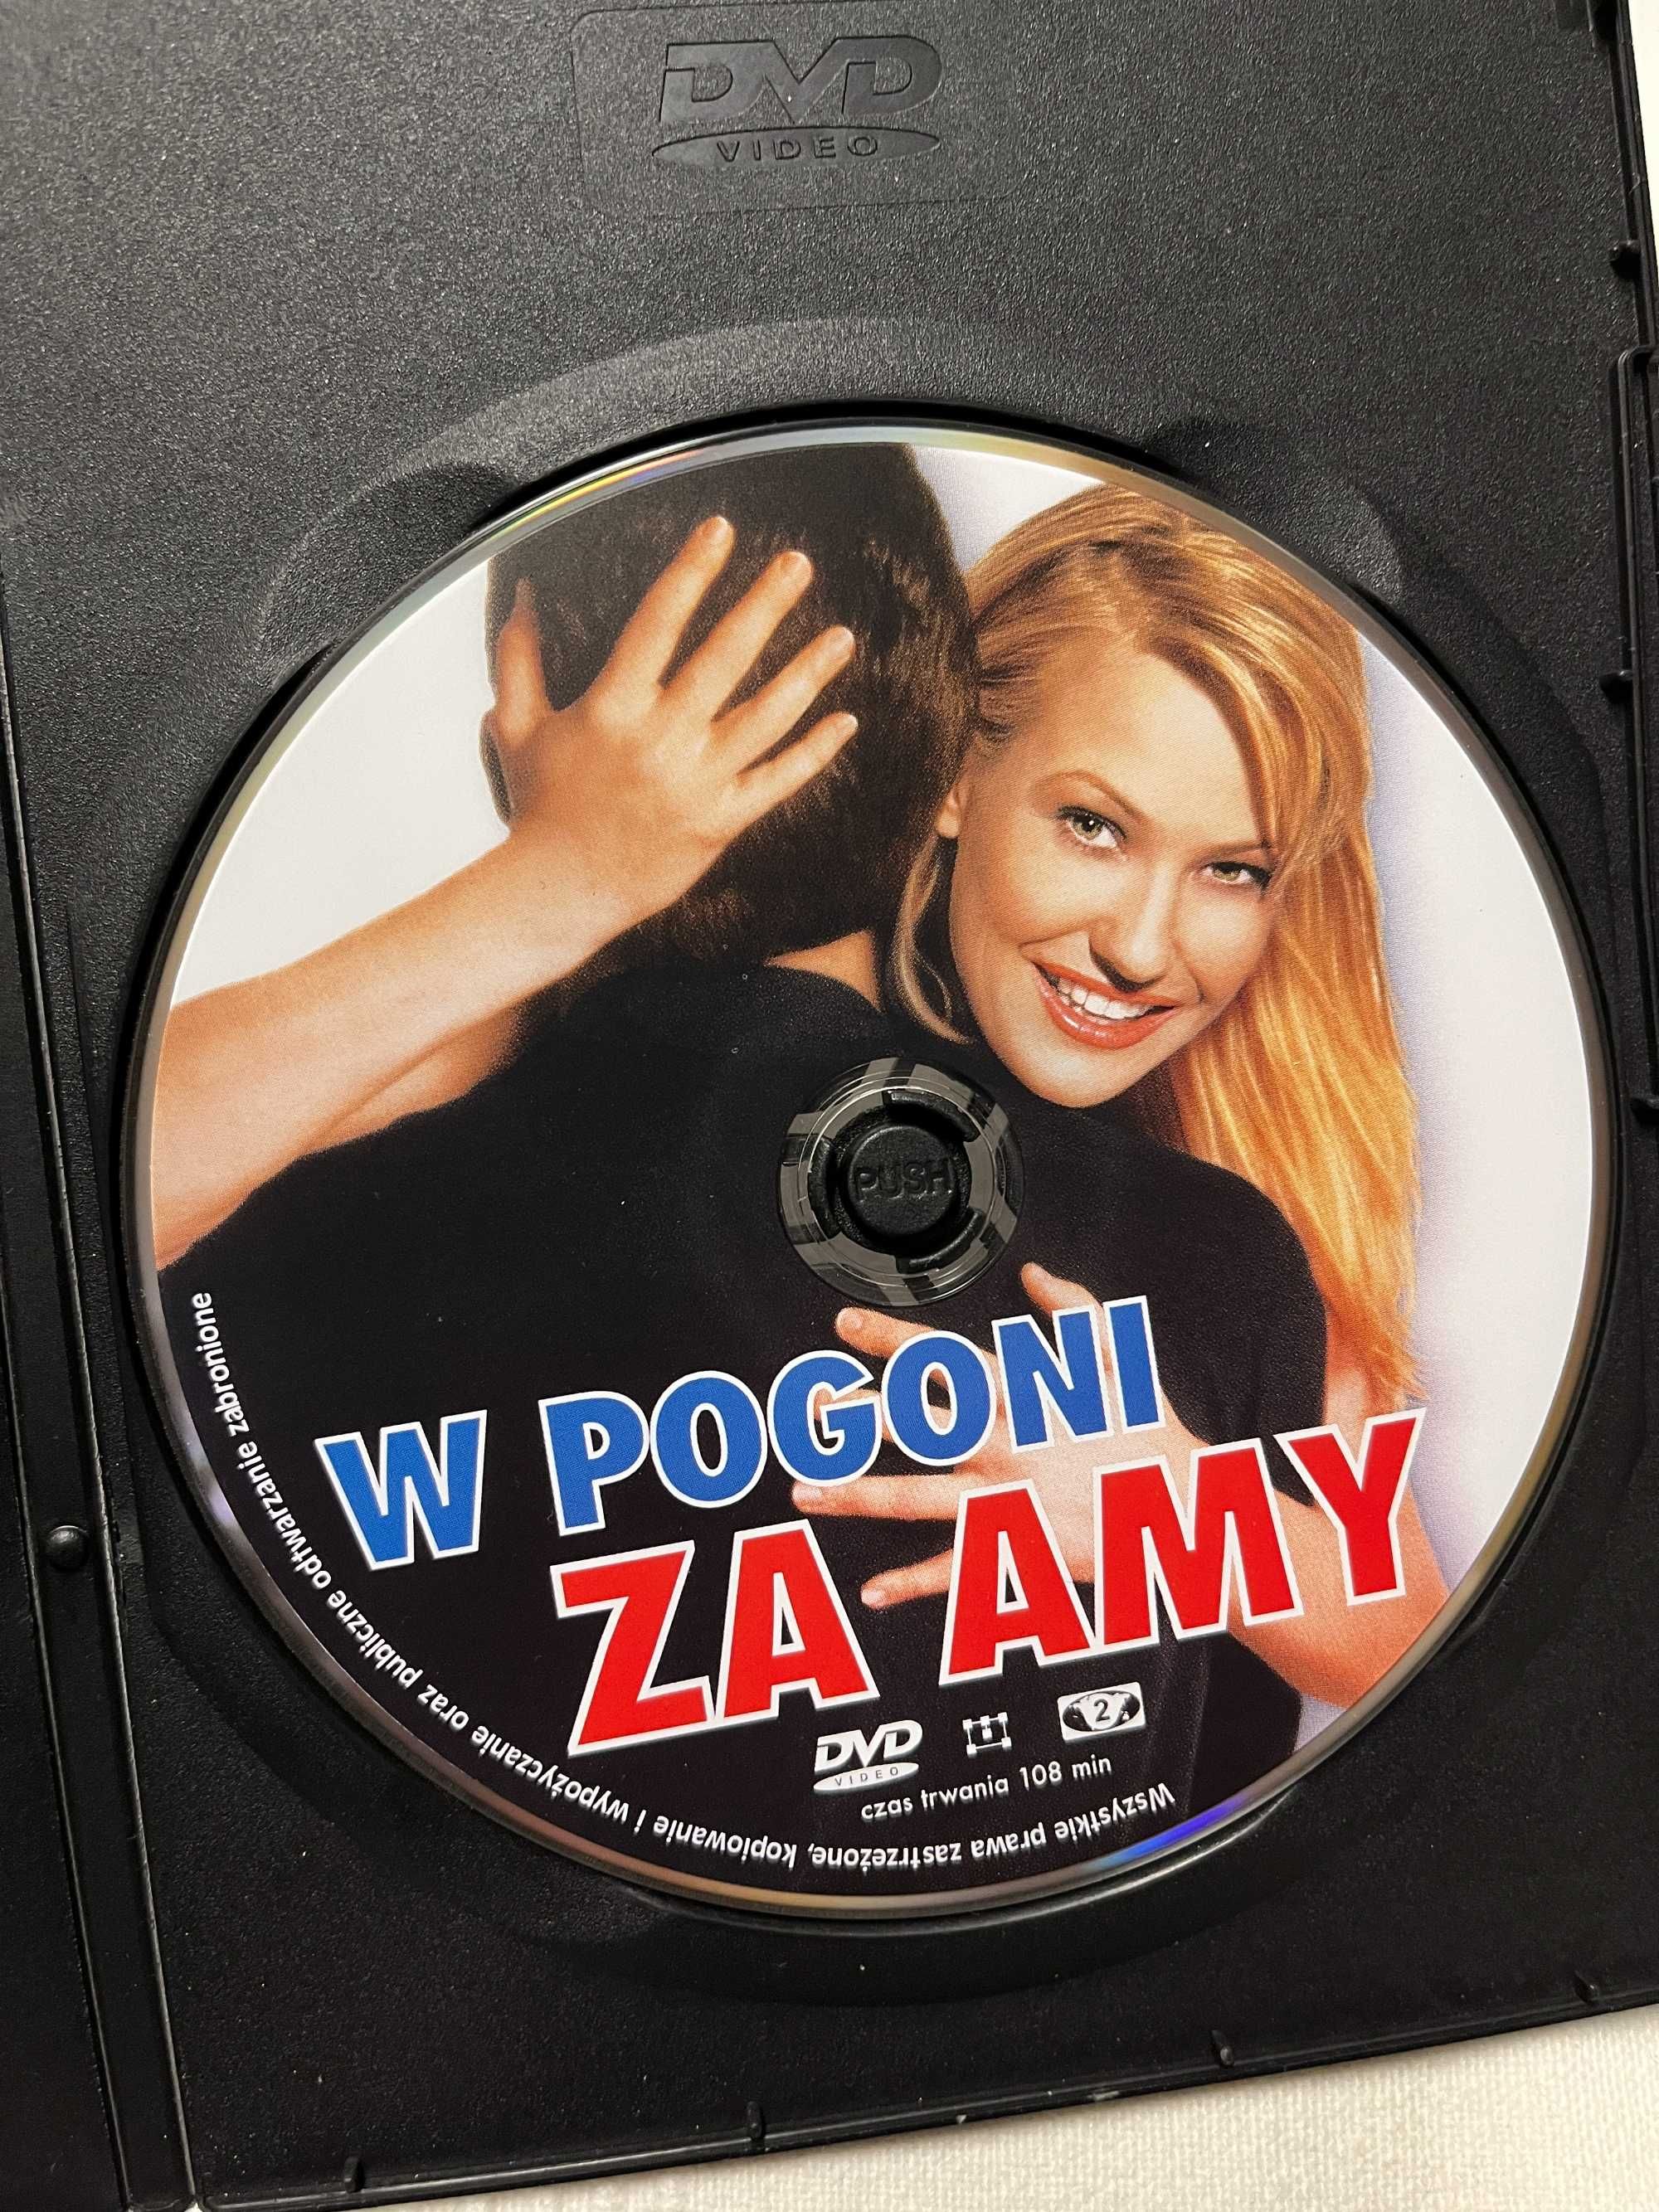 W pogodni za Amy film płyta DVD Chasing Amy 1997 kino cinema movie